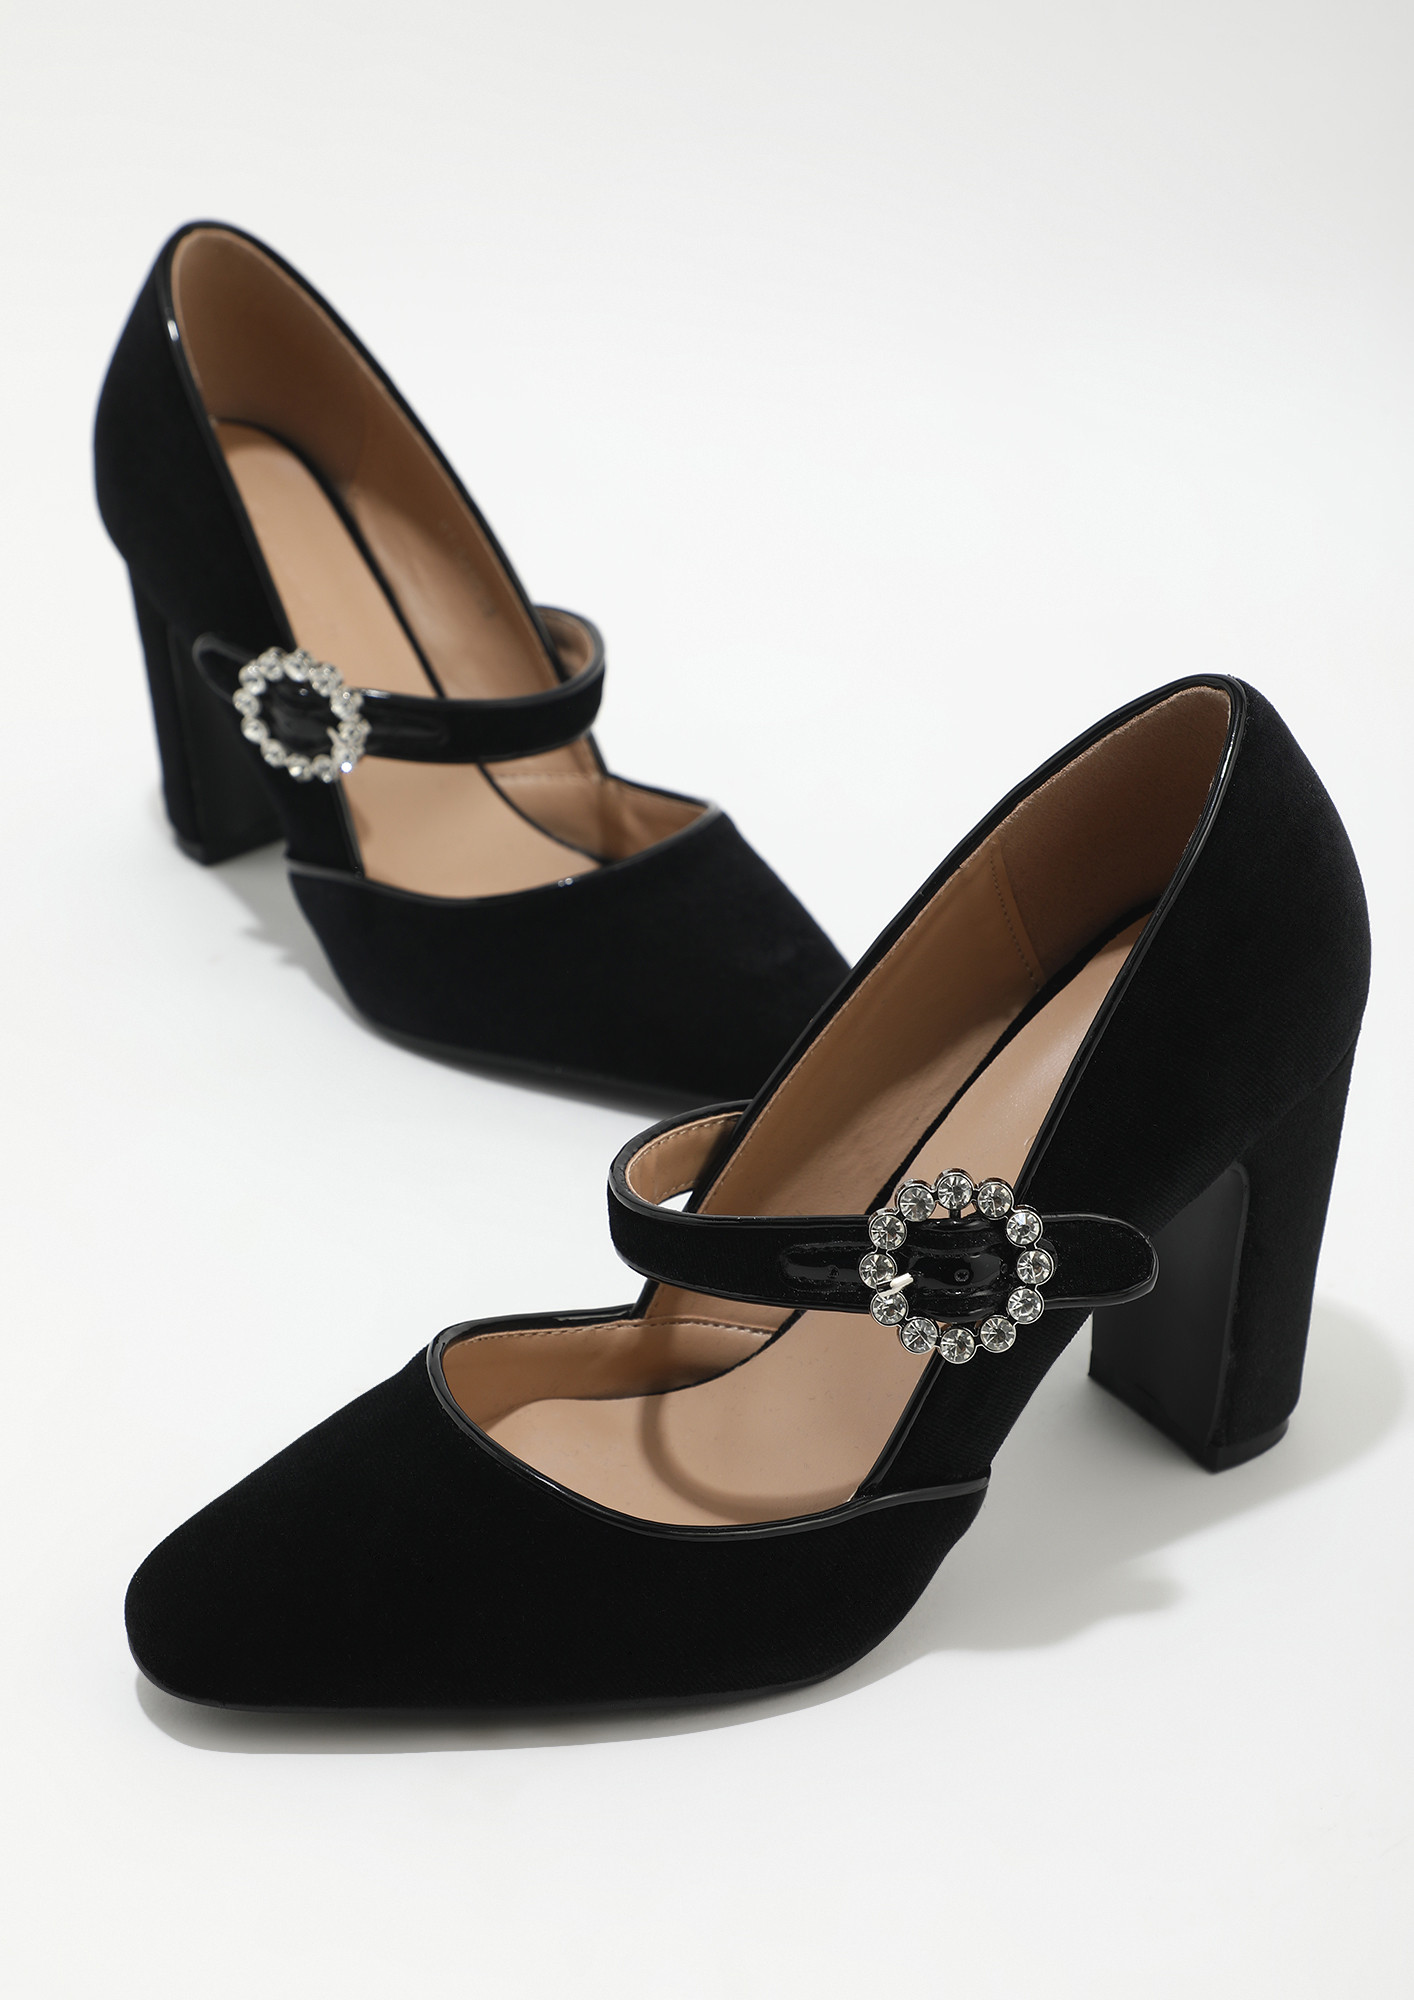 Buy Peep Toe Heels Online from Metro Shoes